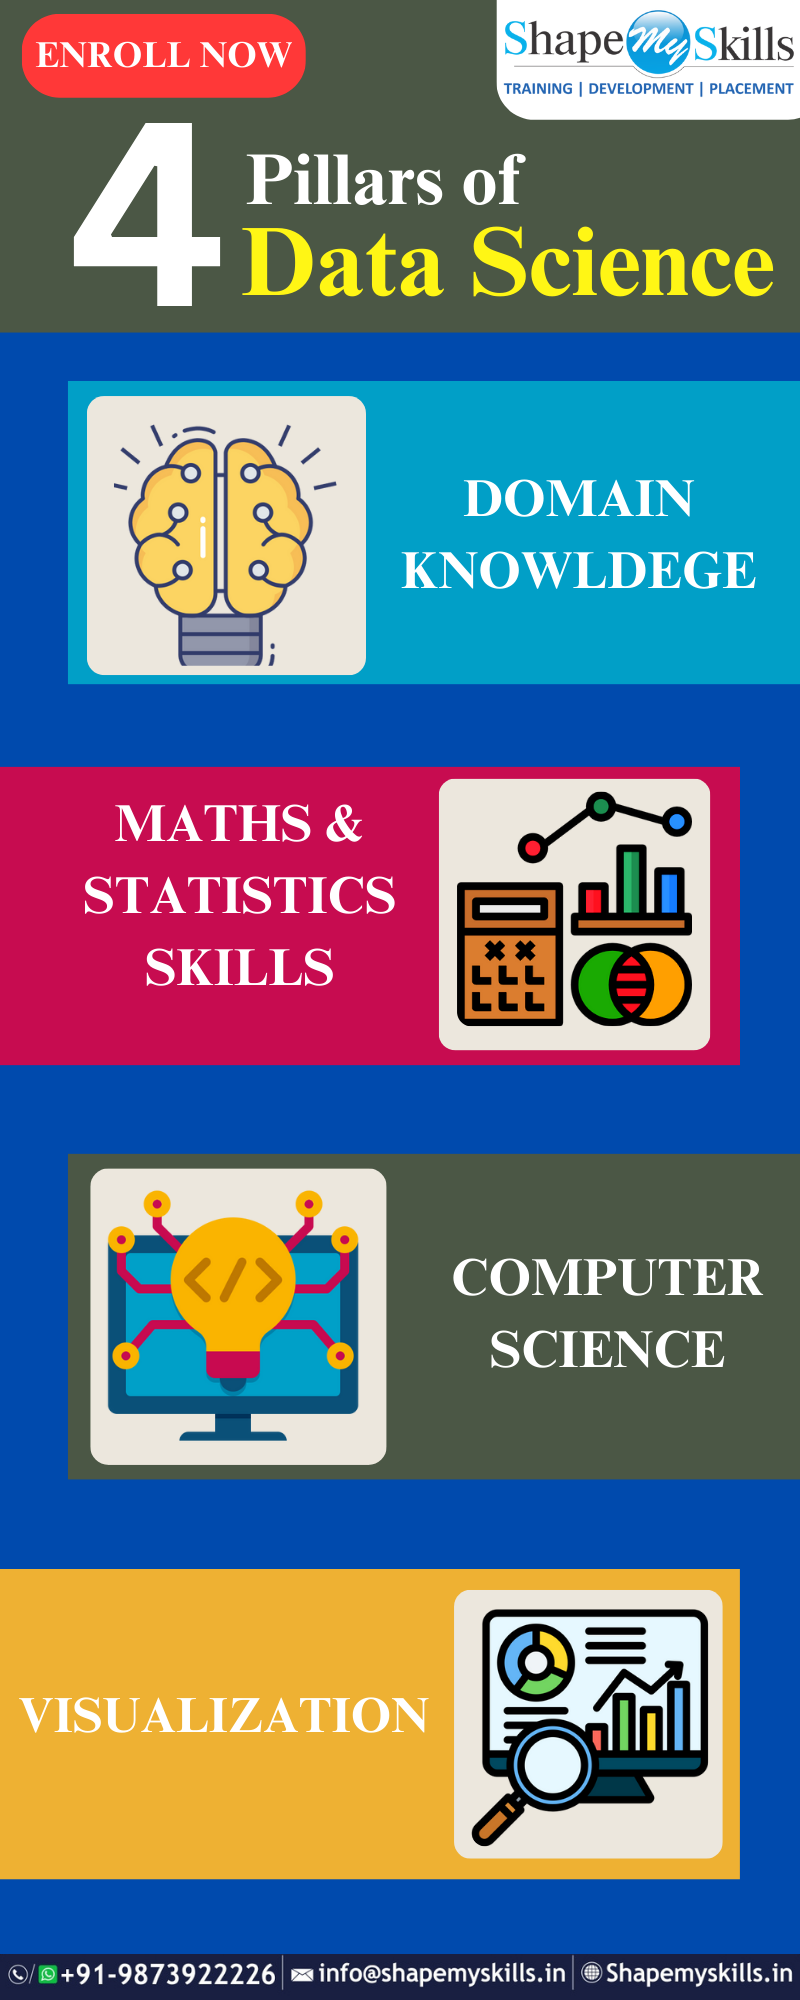 Best data science training institute in Noida